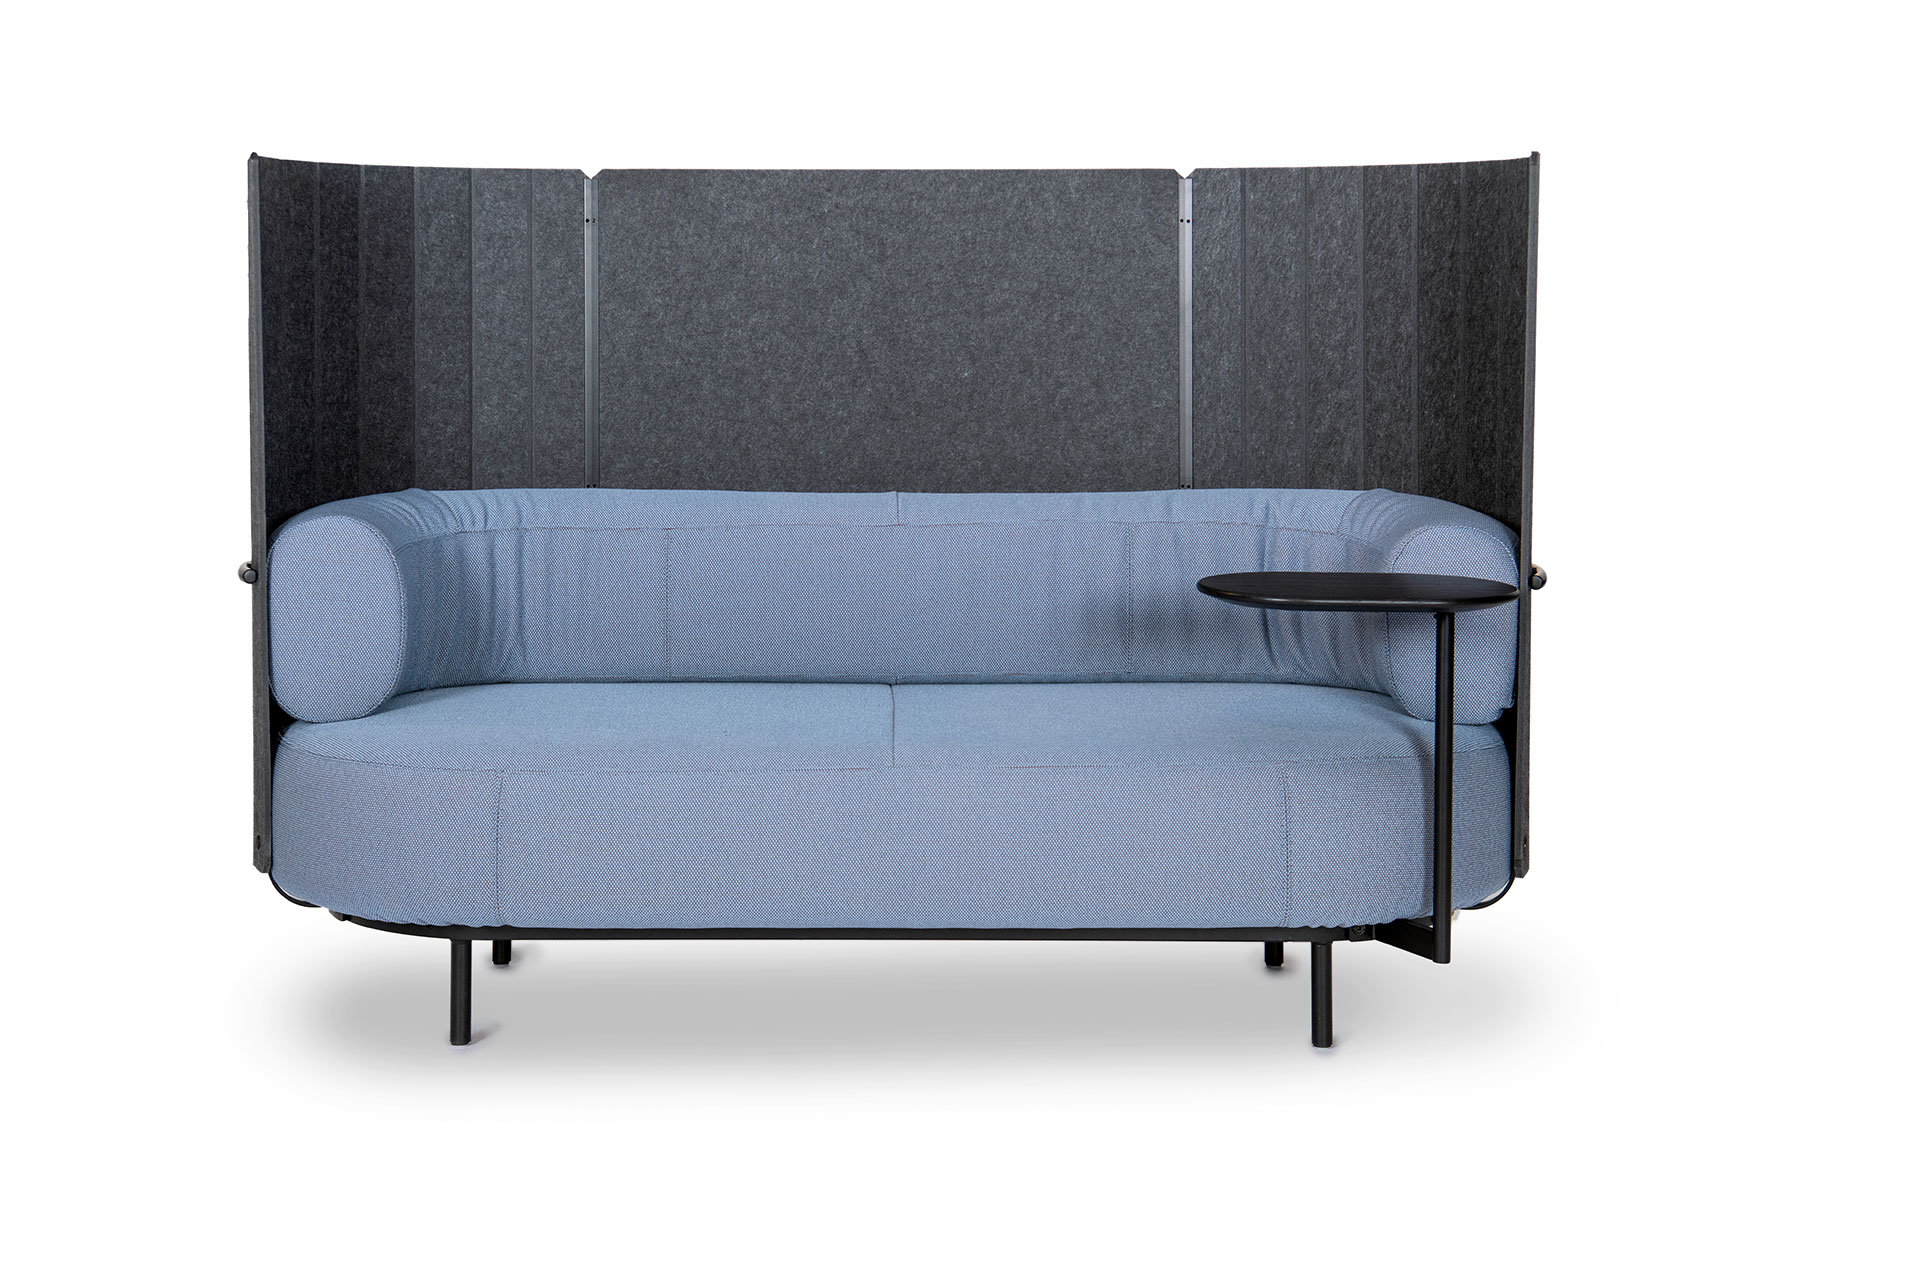 DS-5010 Agility Sofa